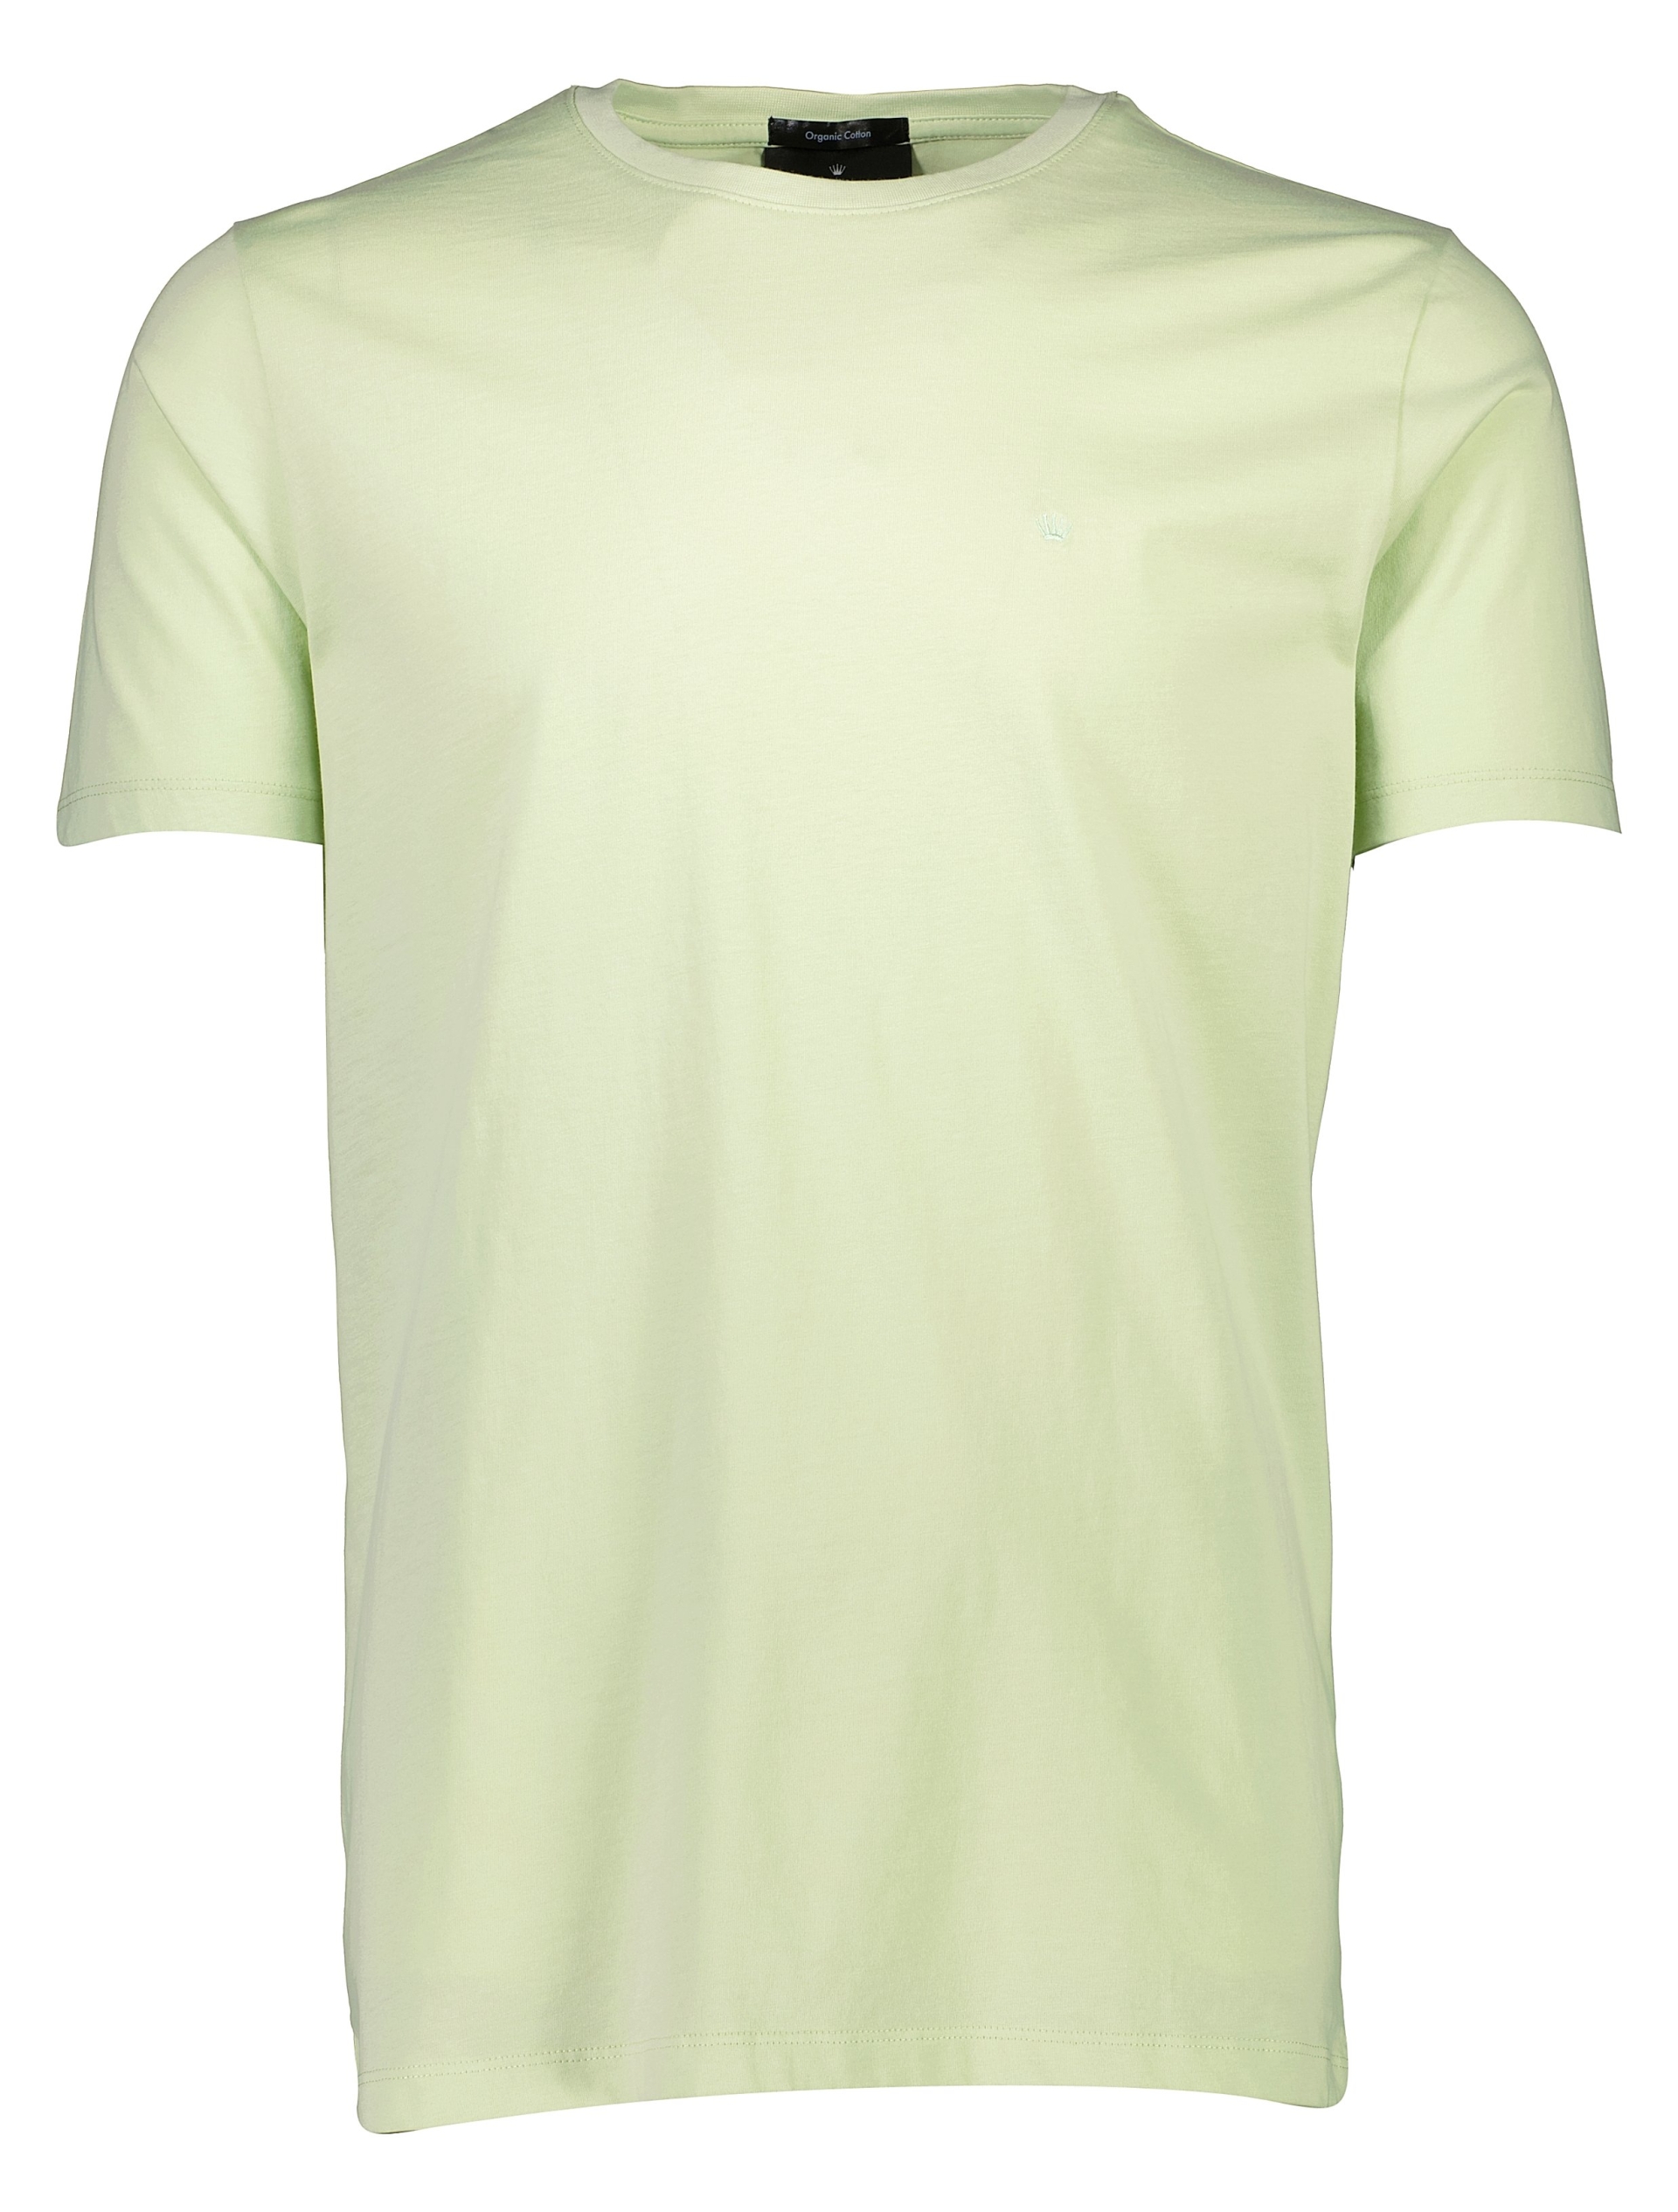 Junk de Luxe T-shirt grøn / mint green